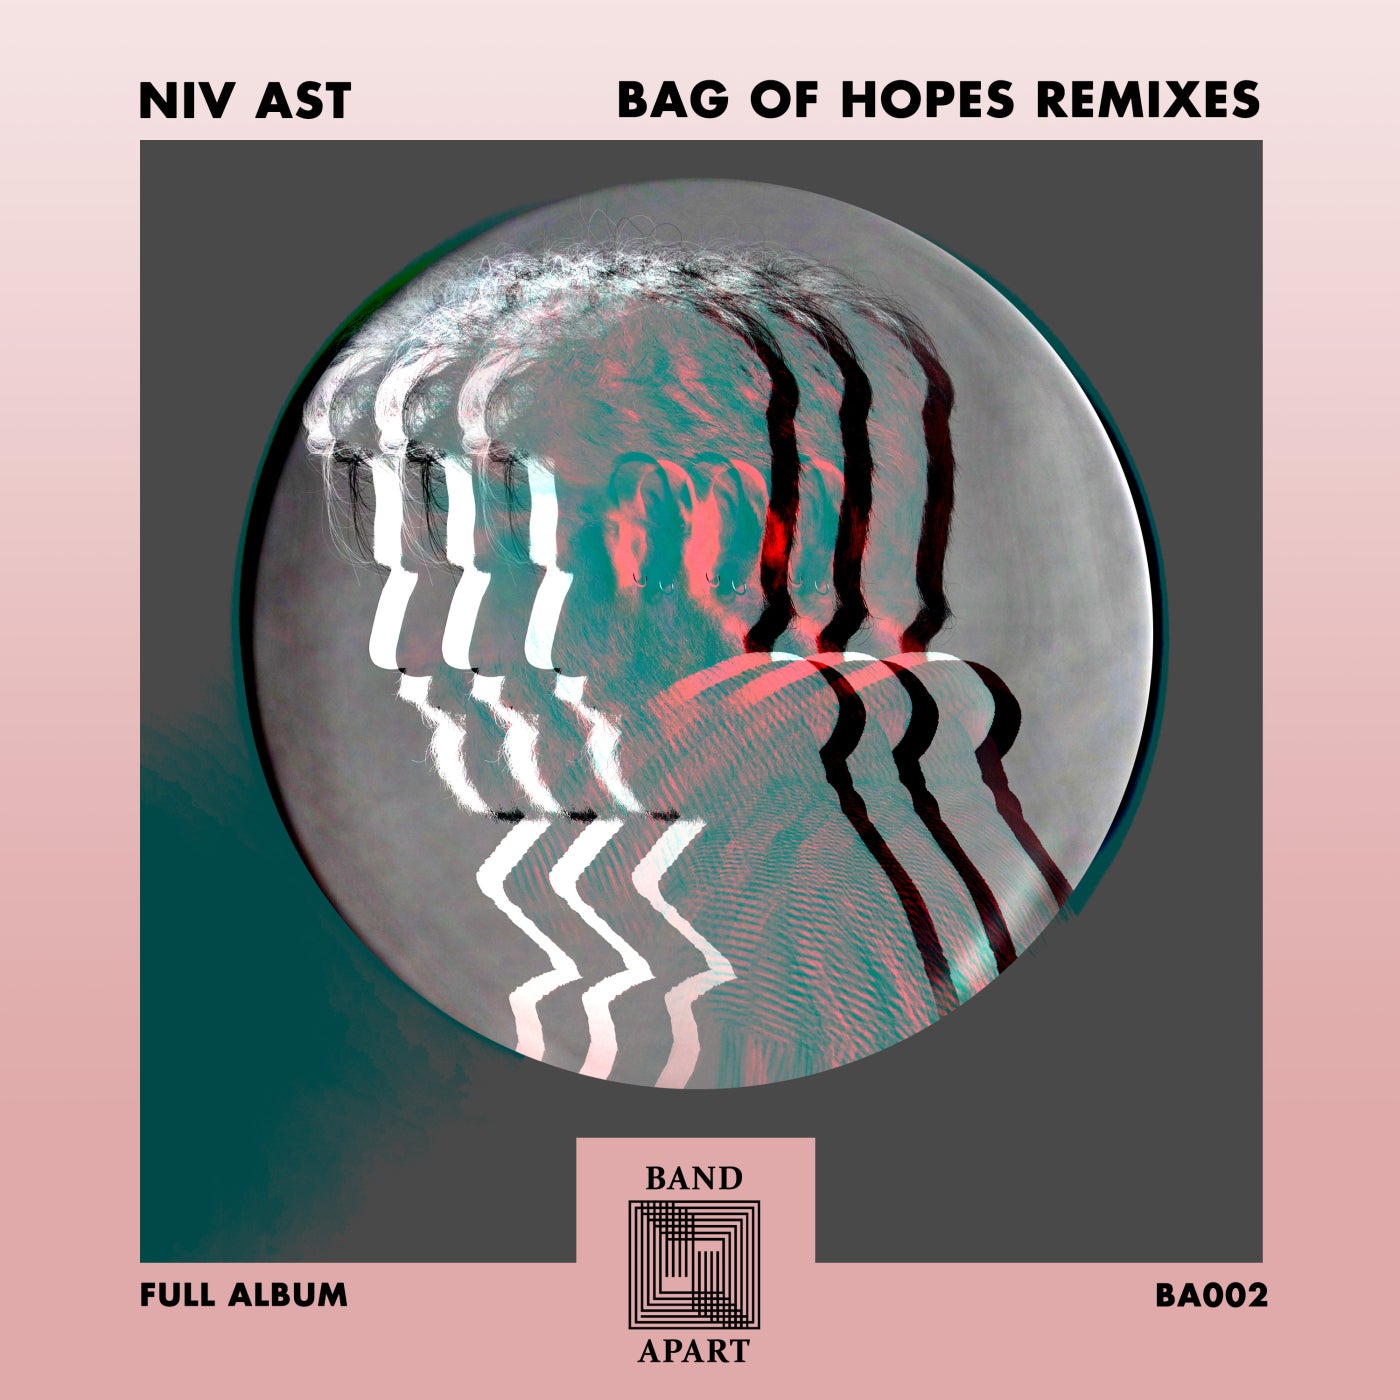 Bag of Hopes Remixes